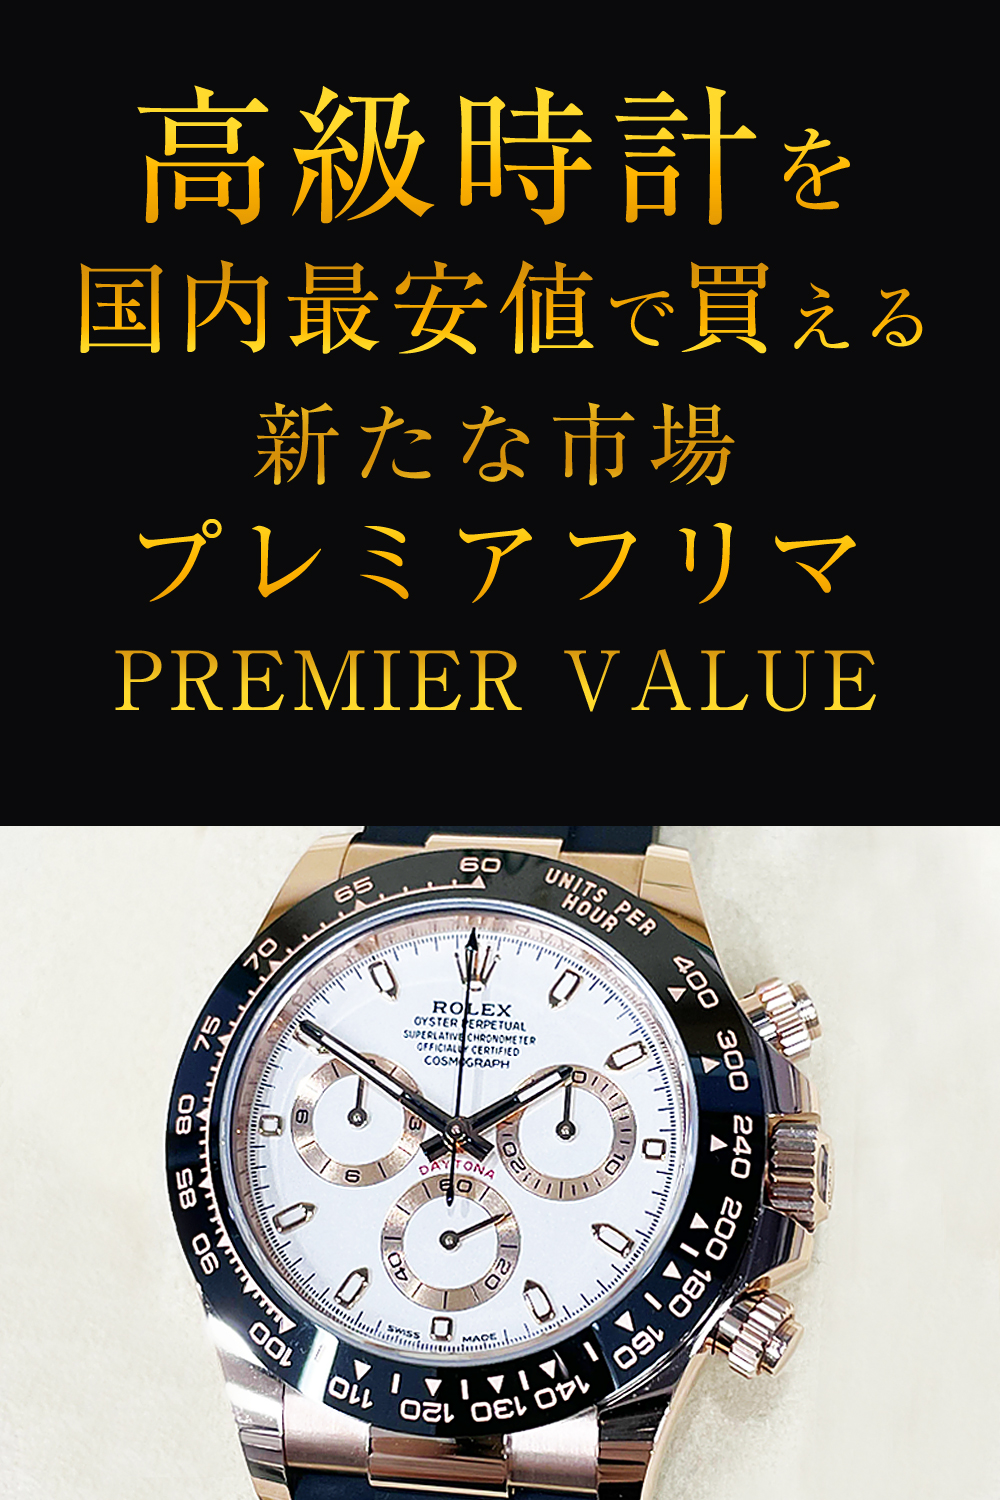 高級時計を国内最安値で買える新たな市場プレミアフリマPREMIER VALUE